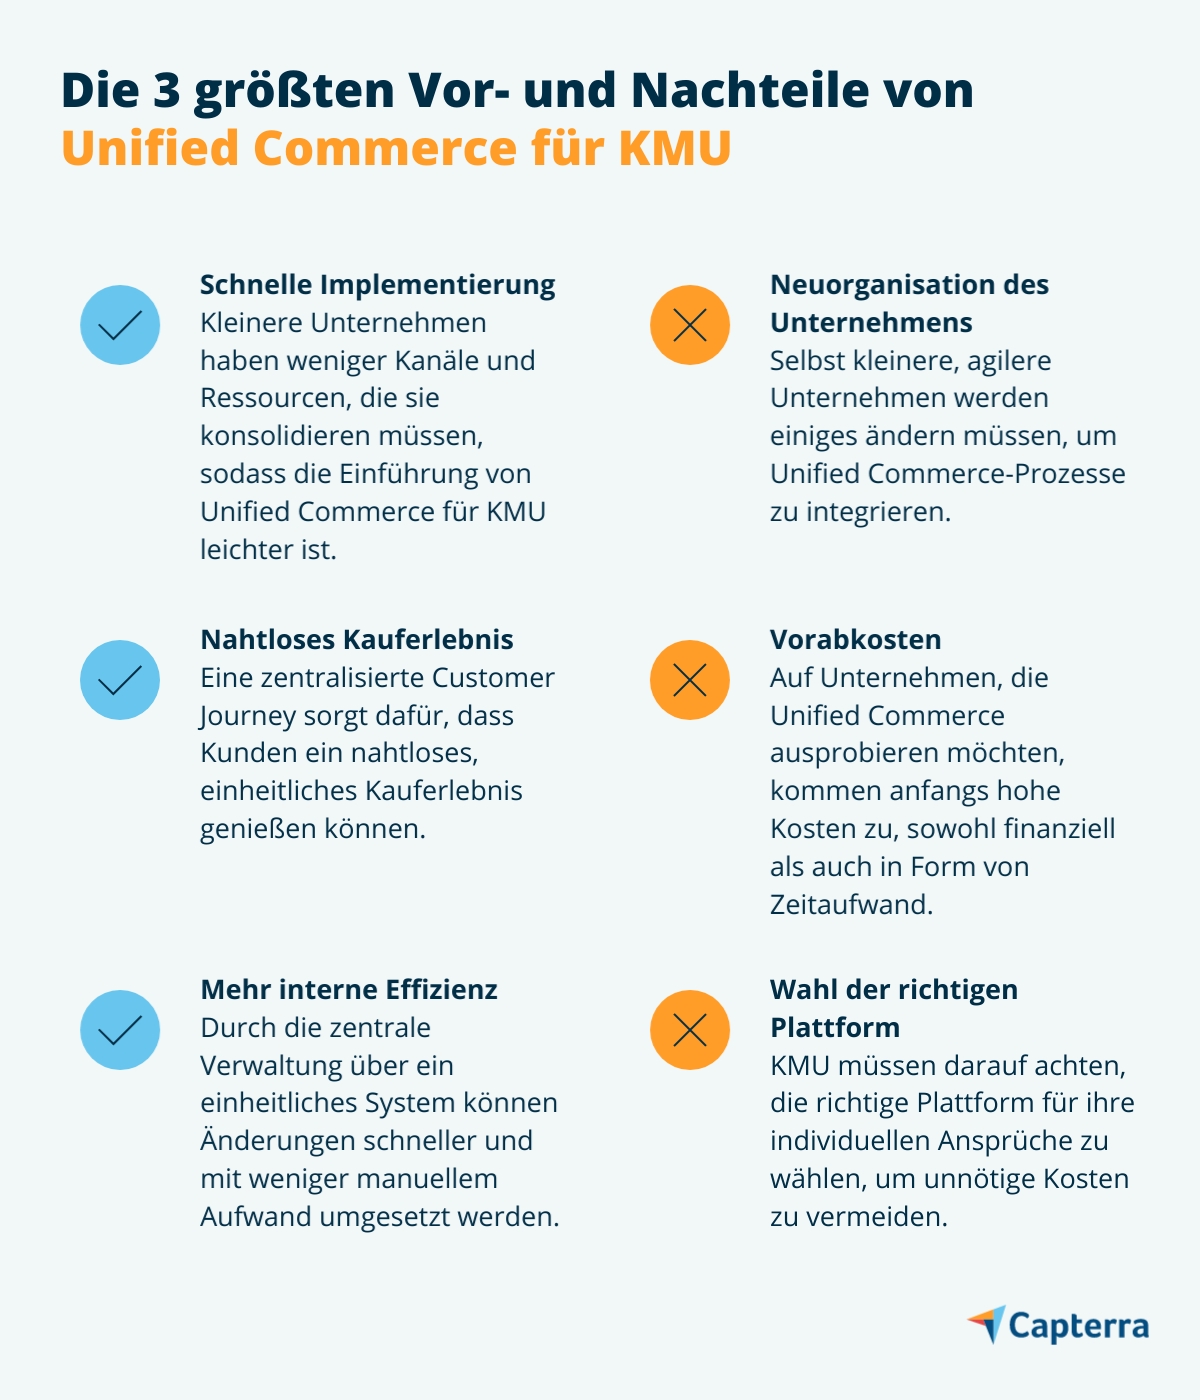 Die Vorteile und Nachteile von Unified Commerce